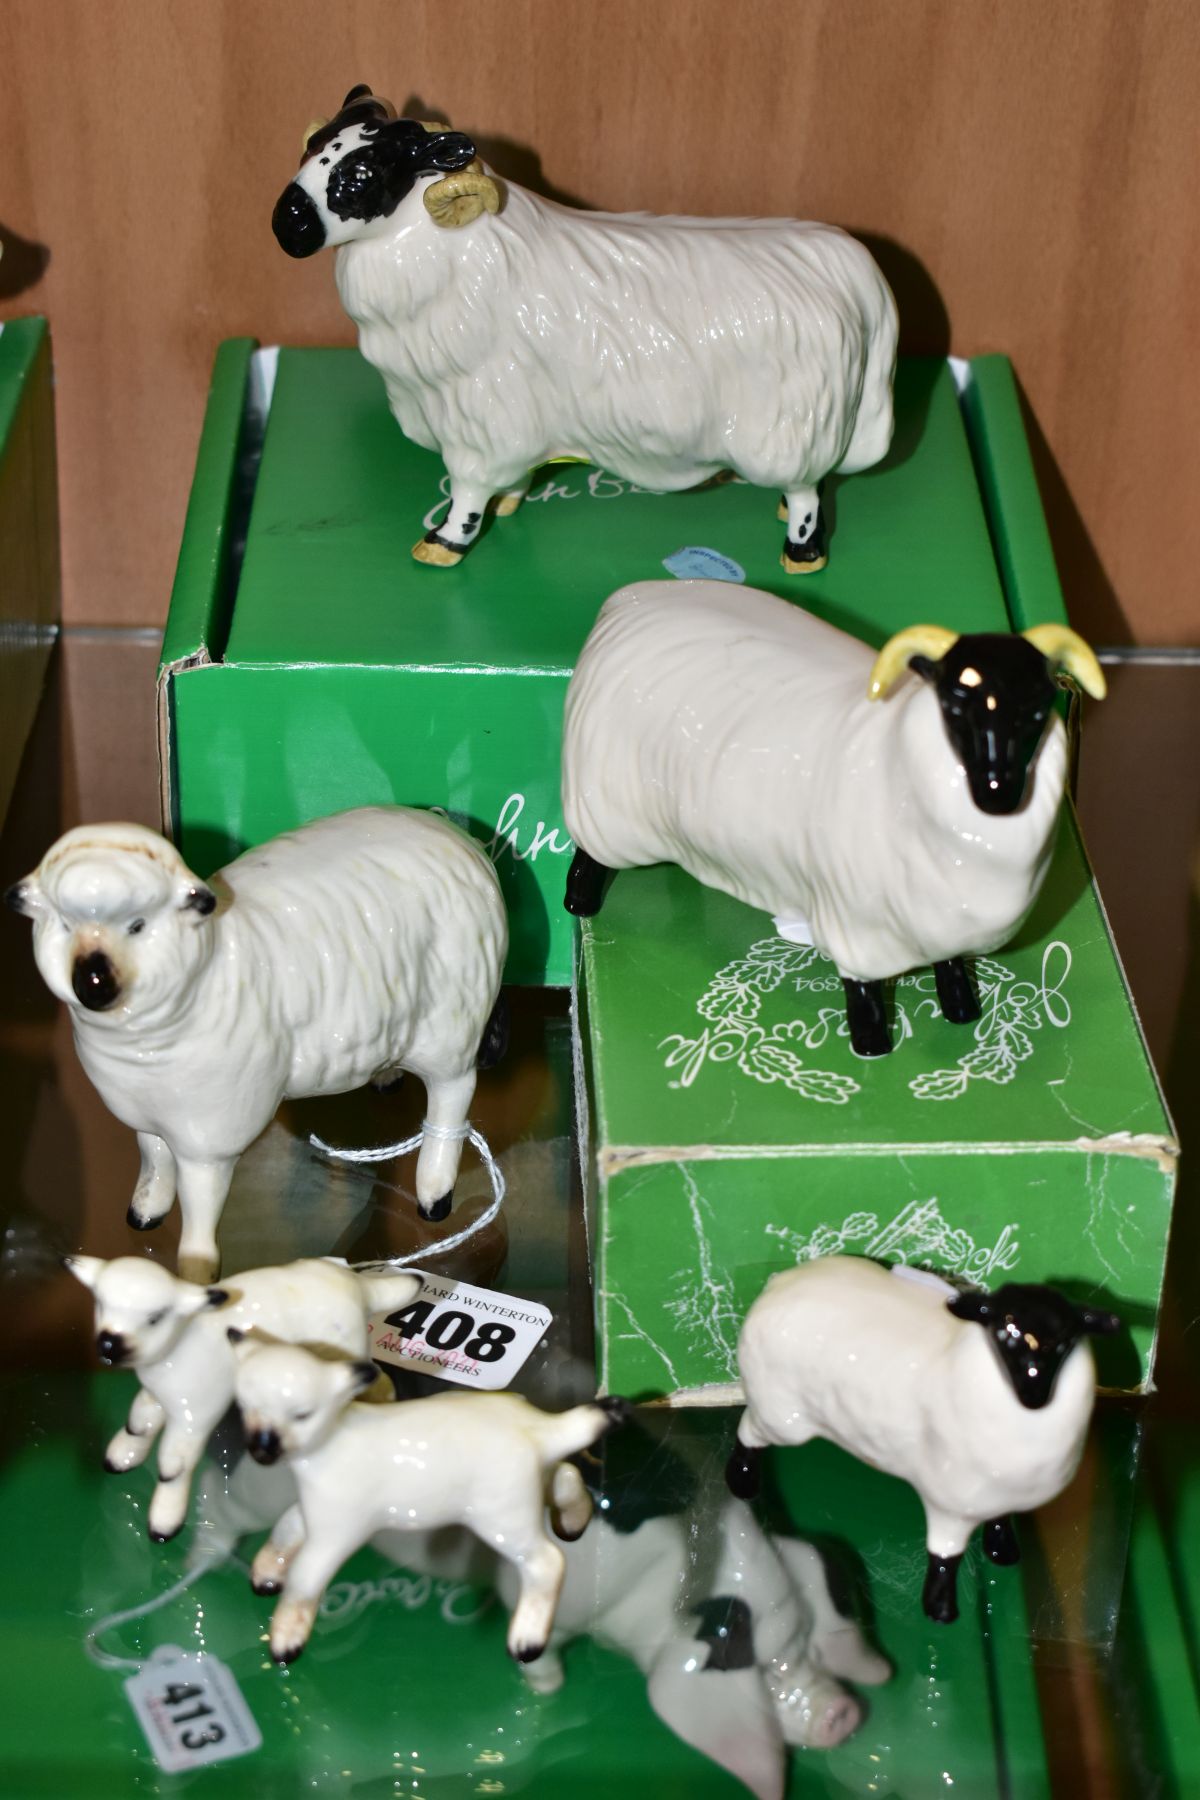 SIX BESWICK SHEEP, comprising sheep No 935, two lambs No 937 and 938, boxed Black Faced Sheep No